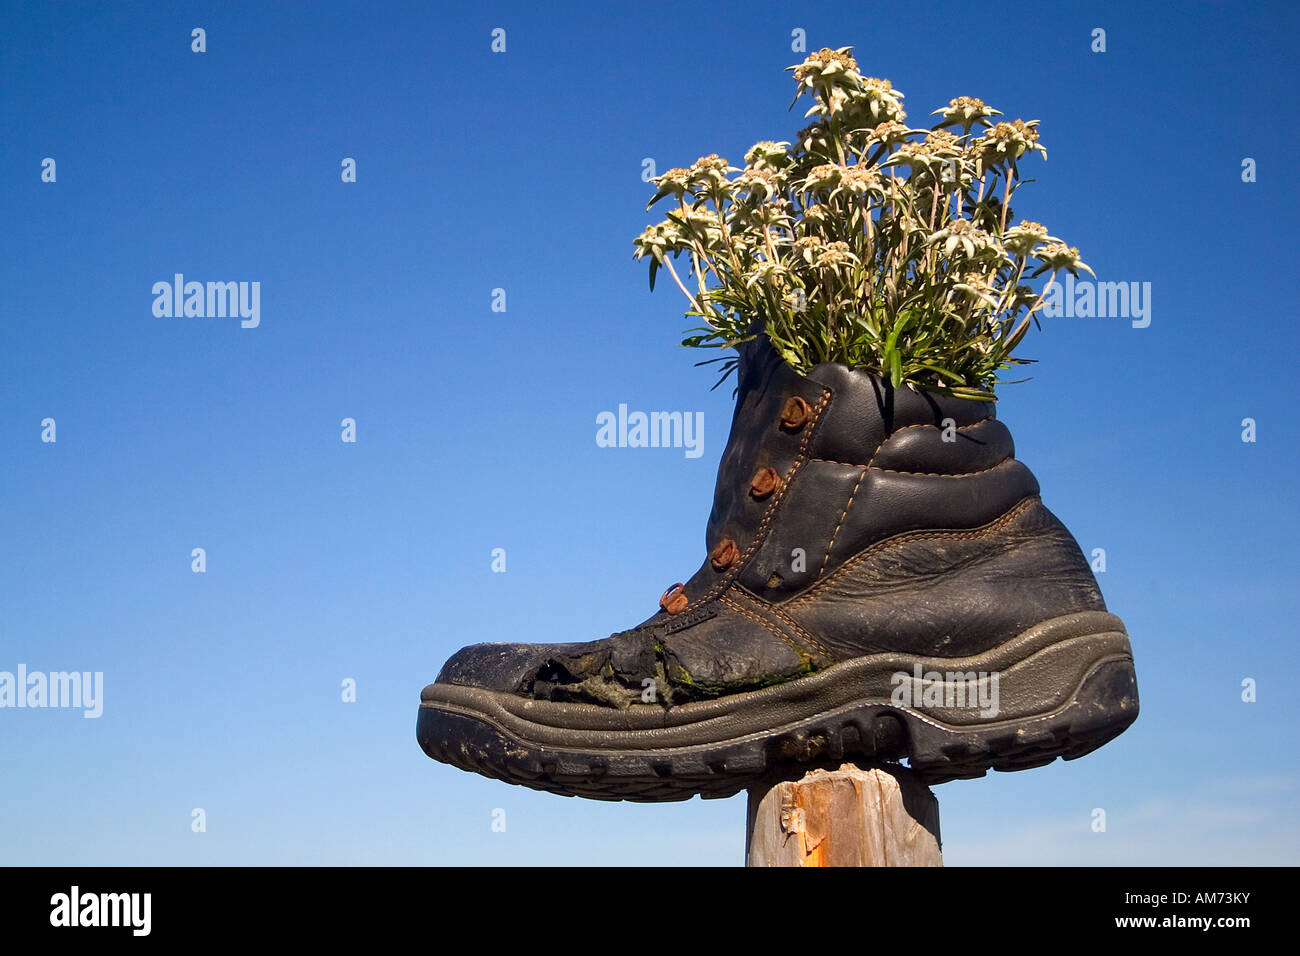 Climbing boot, flower pot, Stock Photo